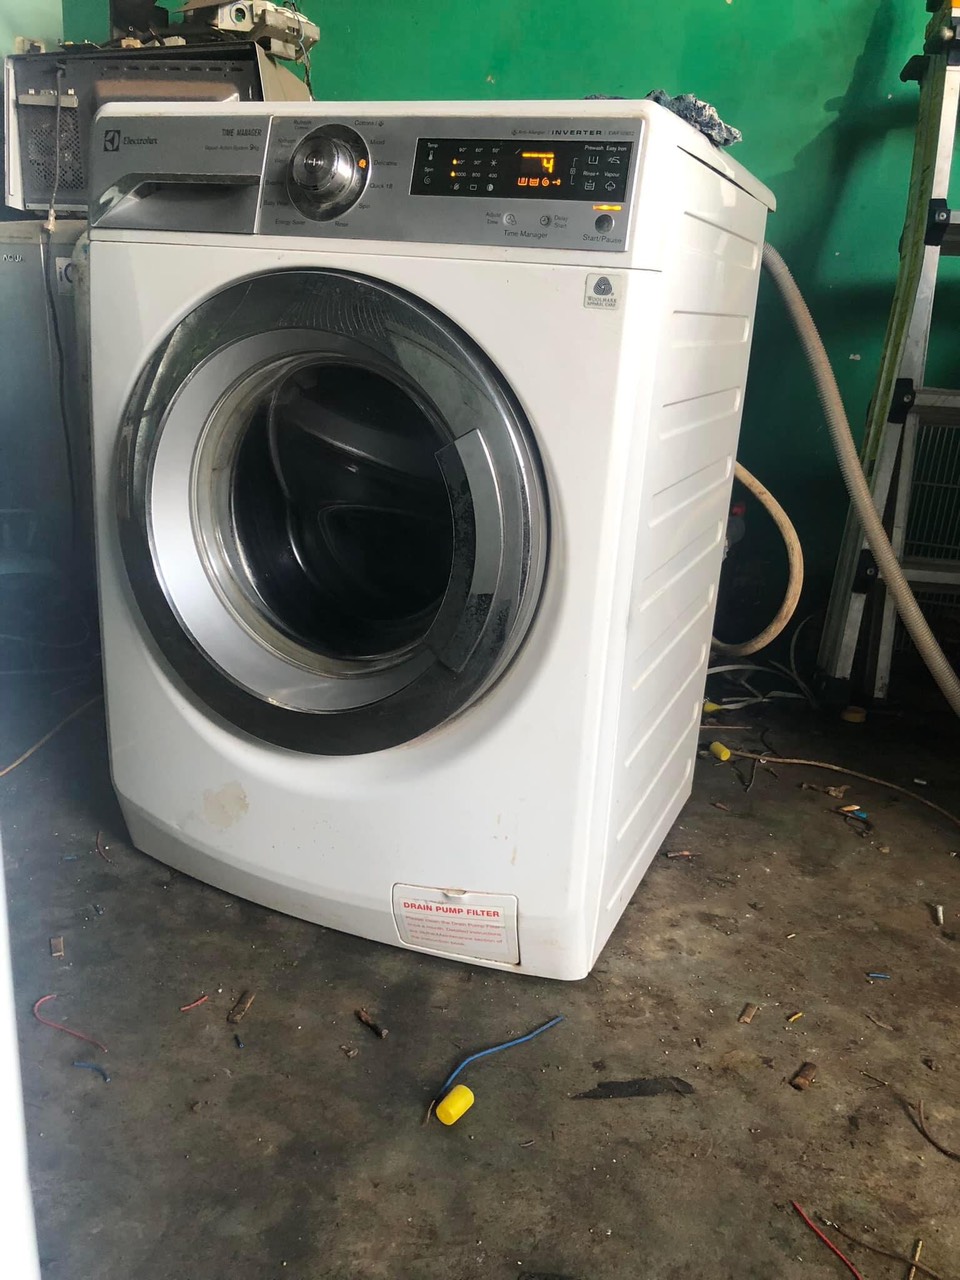 Sửa máy giặt tại nhà quận 12 ⭐️Có mặt nhanh sau 30 phút⭐️ mang đến với tất cả khách hàng sự chuyên nghiệp